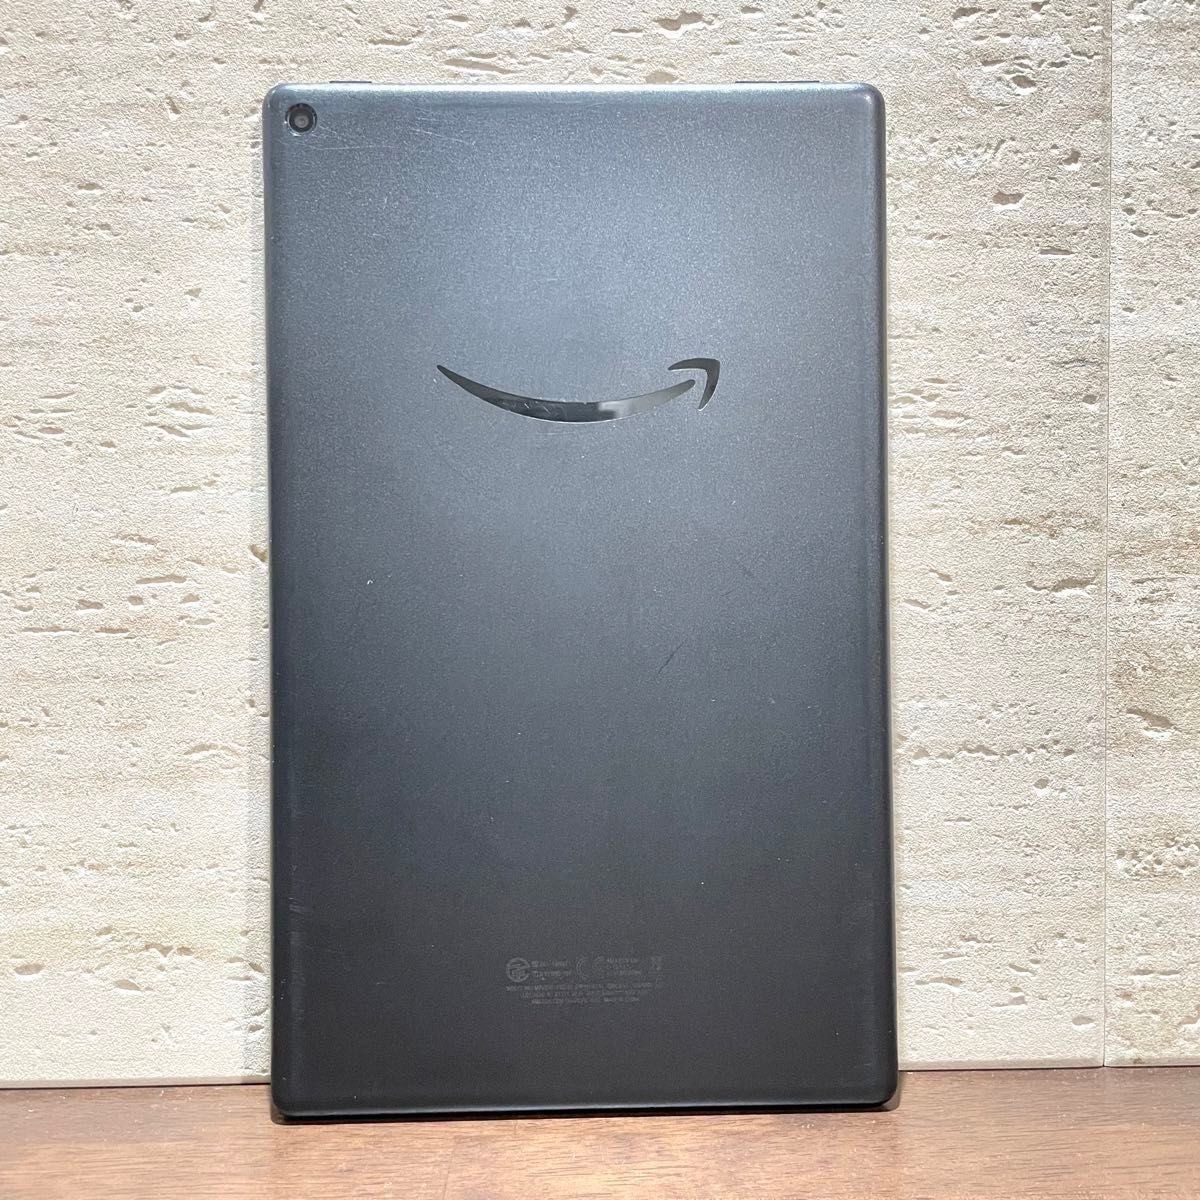 Amazon fire HD 10 第9世代 2019年モデル ブラック 32GB 中古品